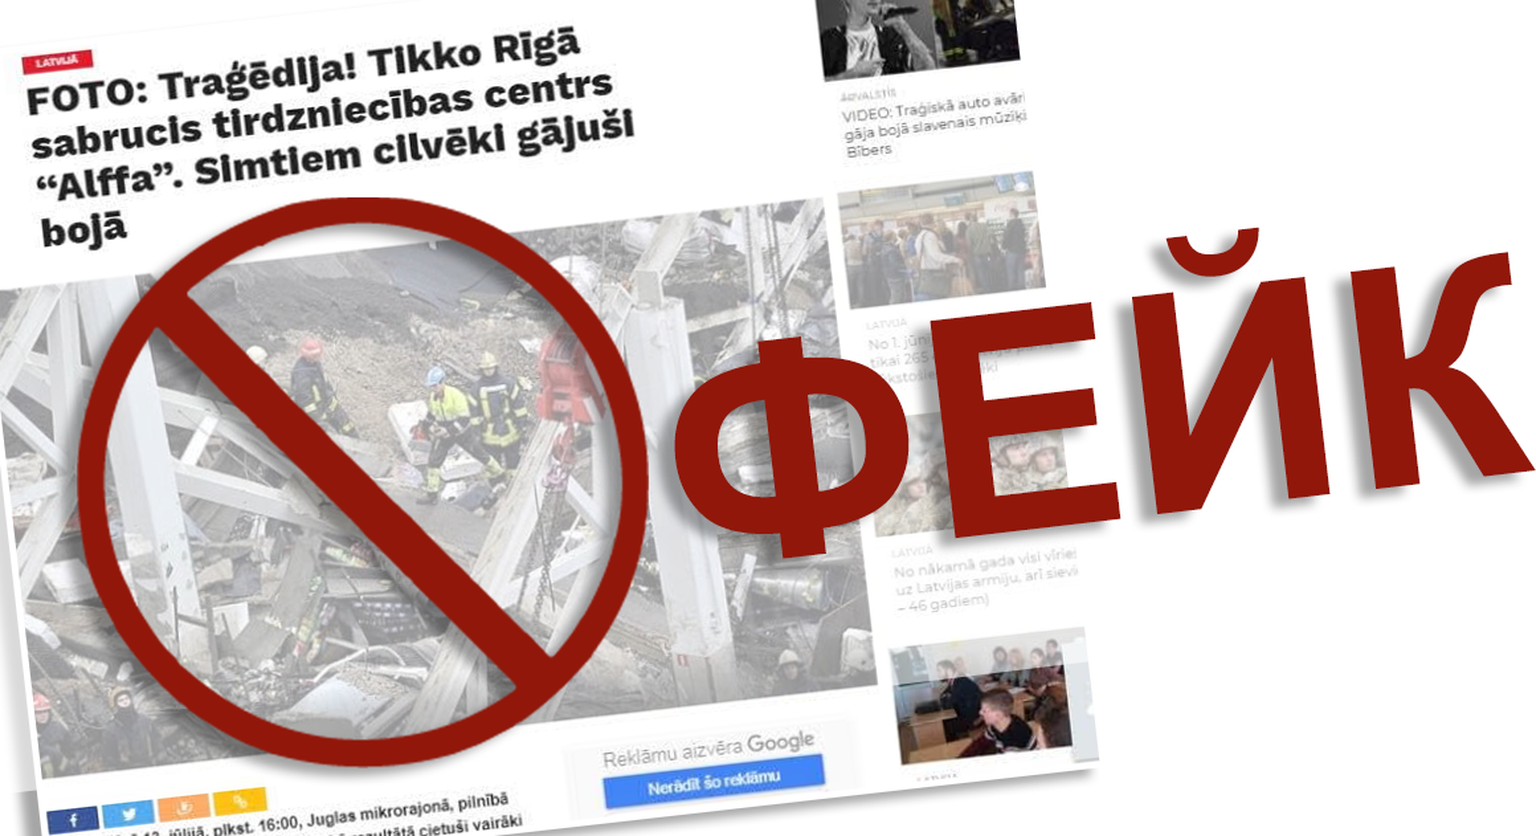 13-го июля один из сайтов опубликовал фейк о якобы рухнувшем супермаркете в Риге. В социальных сетях ее распространяли профили несуществующих людей. Государственная полиция начала расследование.